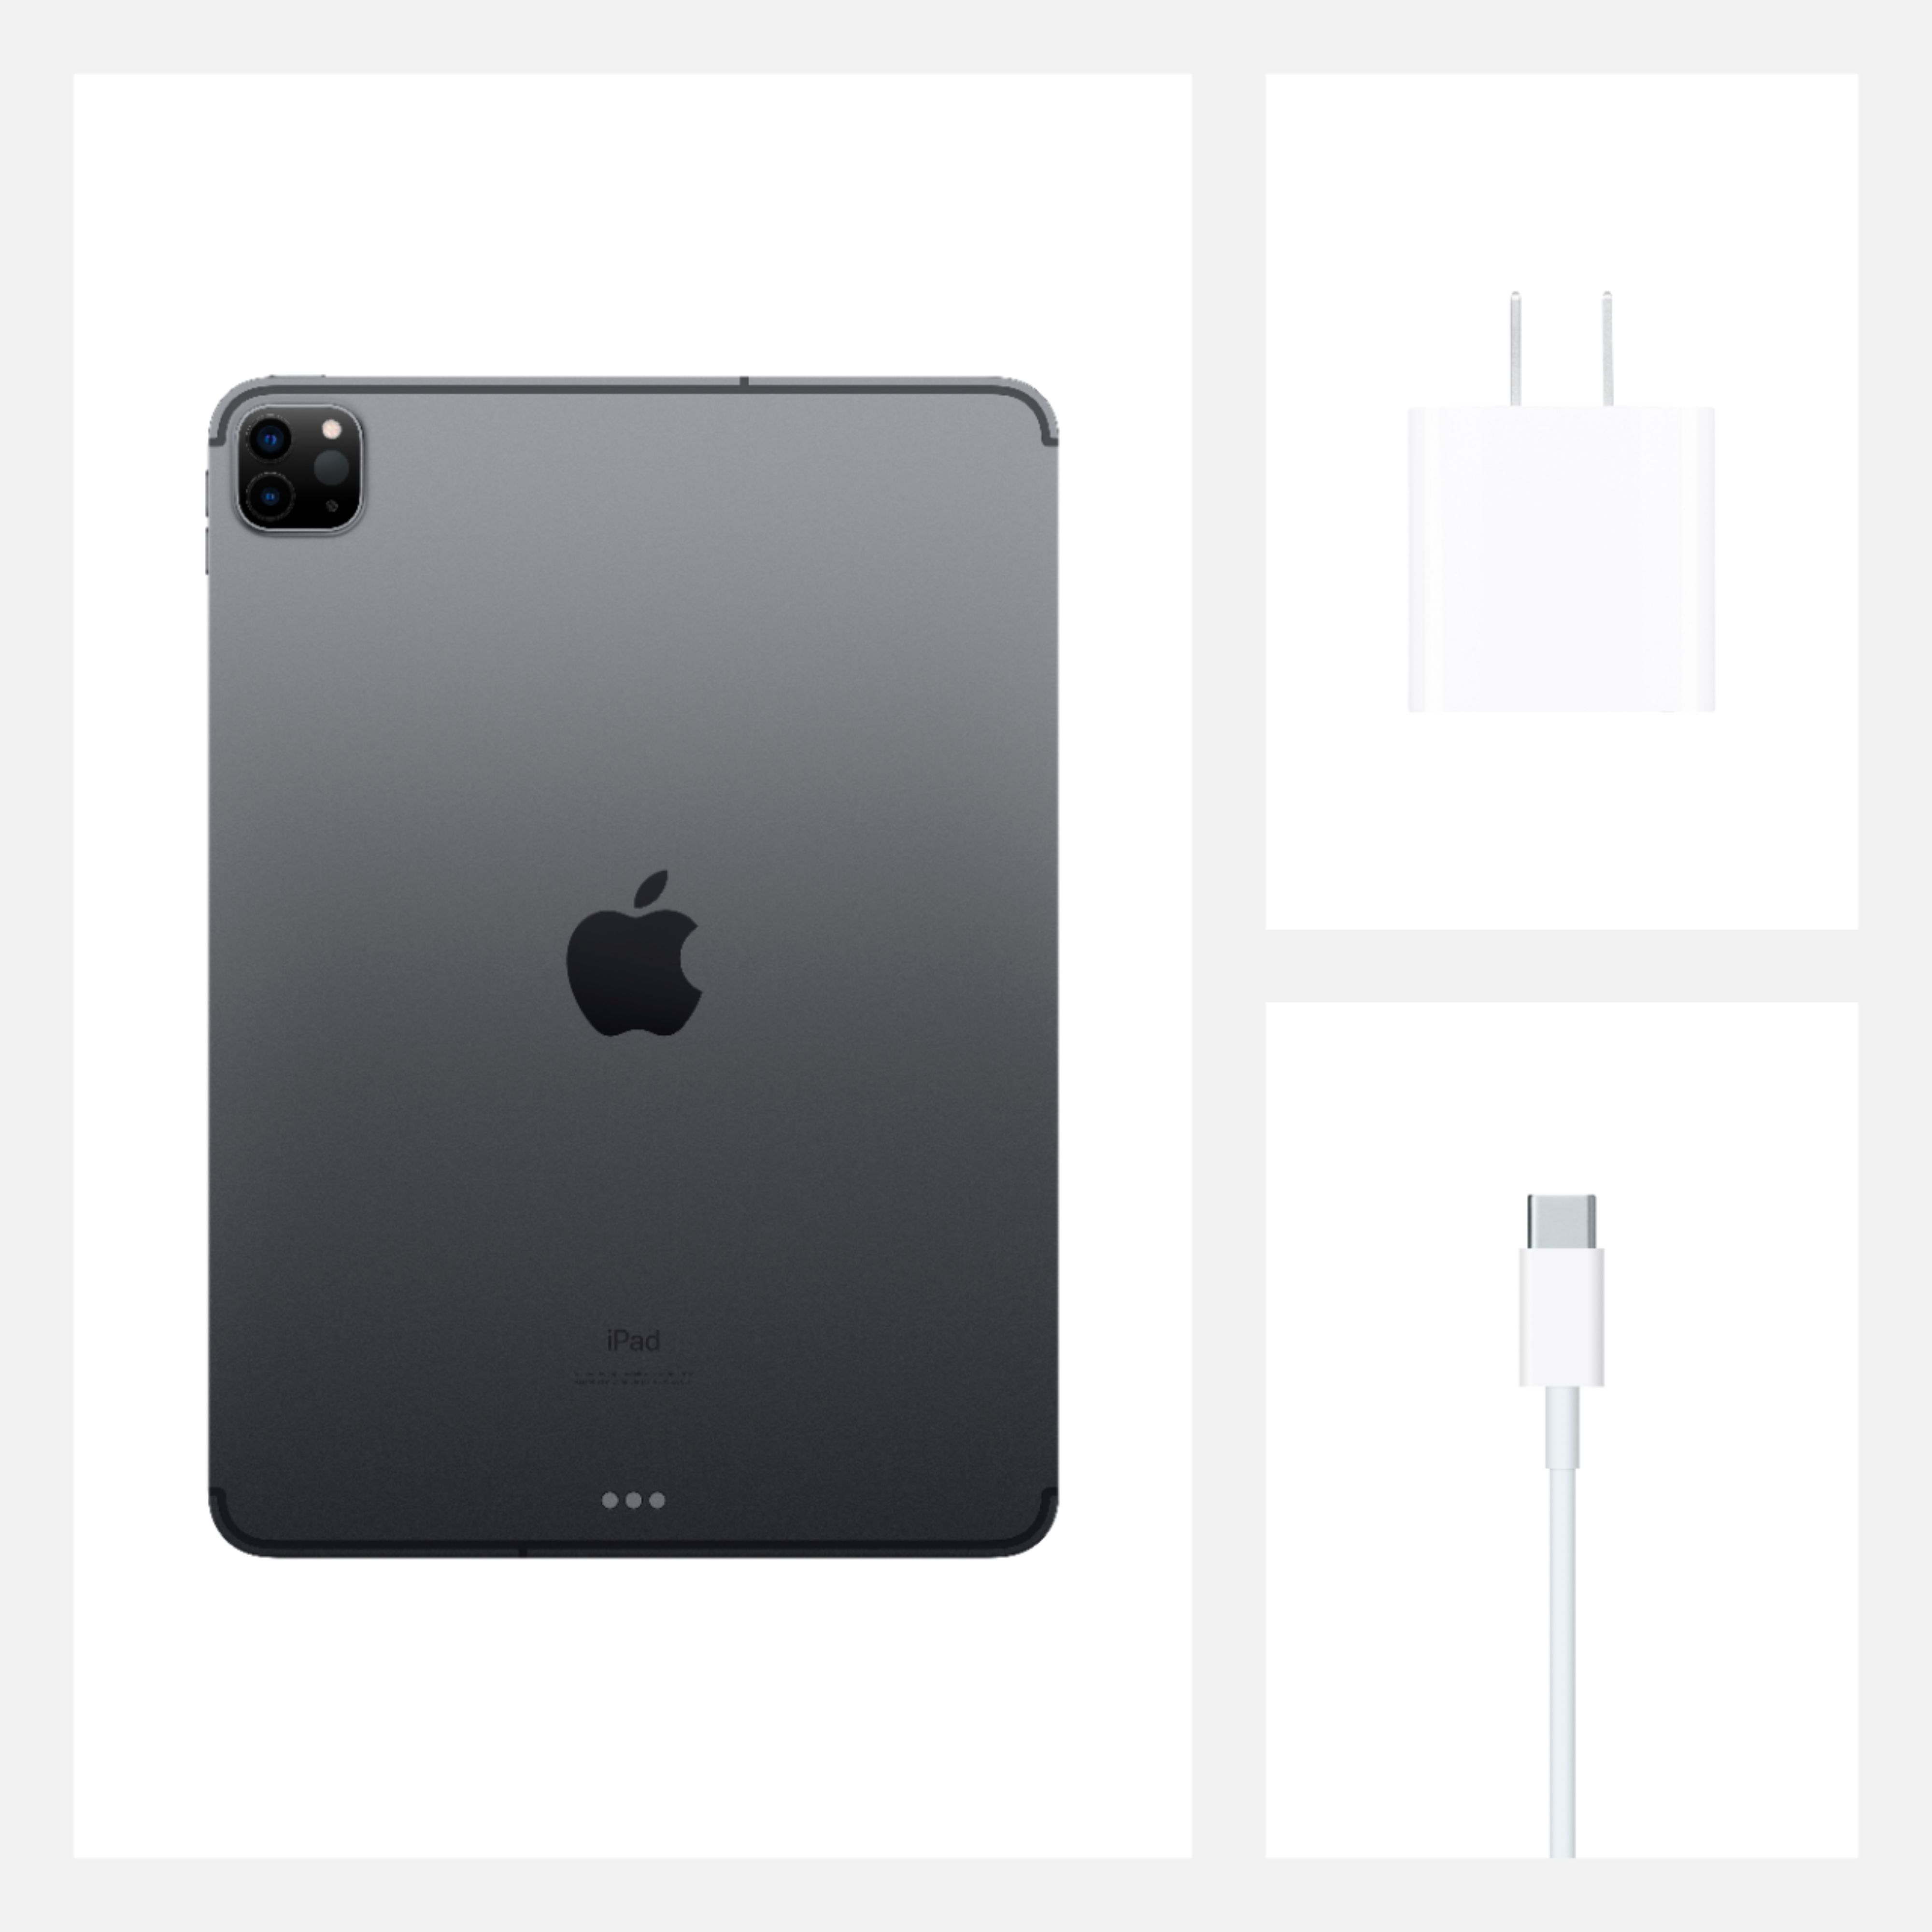 ジャパン公式オンライン 第2 Pro 【美品】iPad 256GB 2020 WiFi＋Cellular タブレット